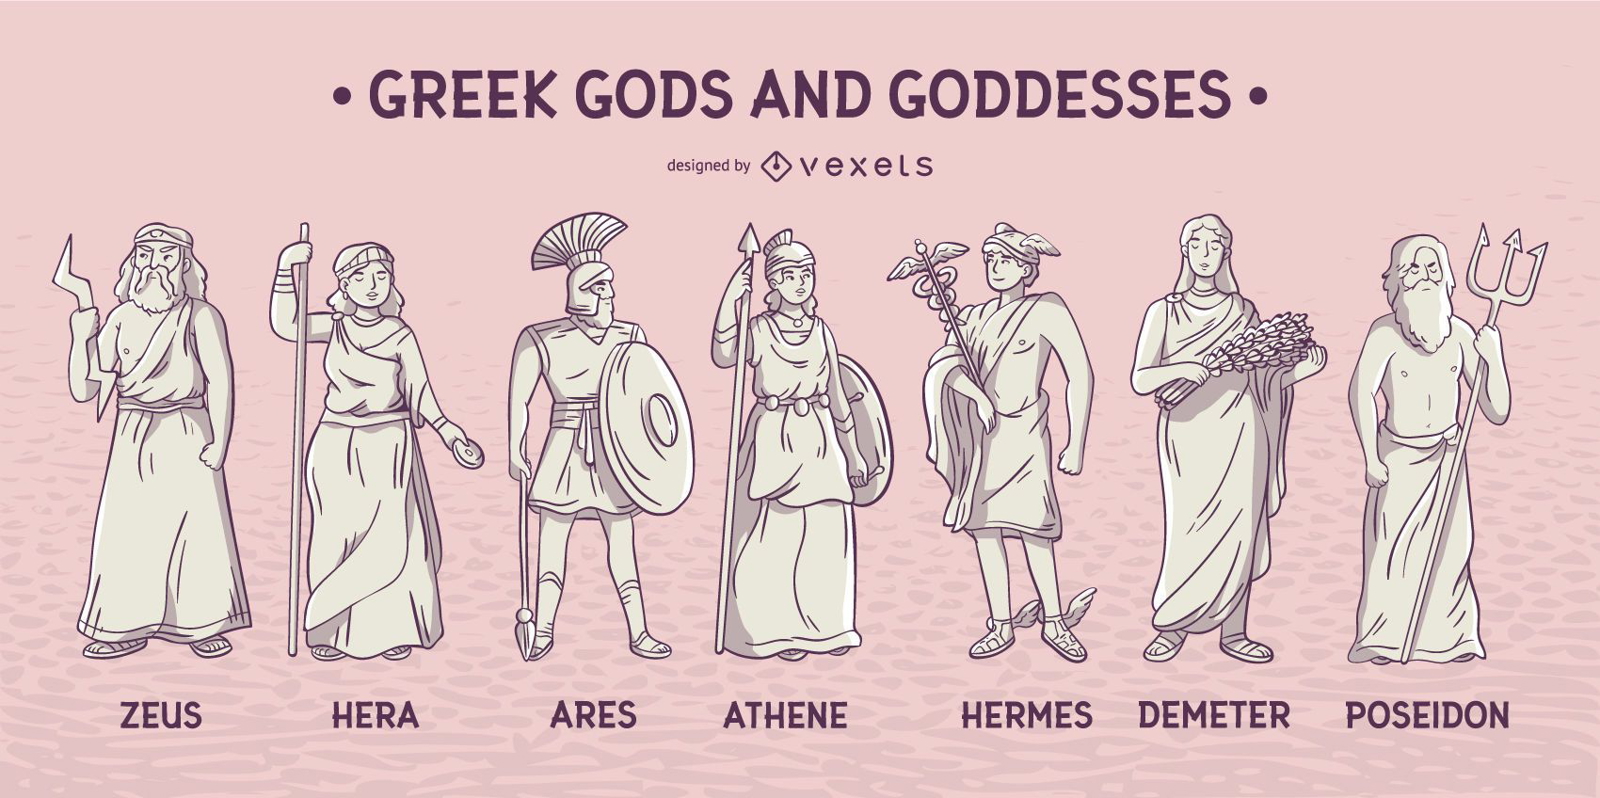 13 Greek Gods And Goddesses